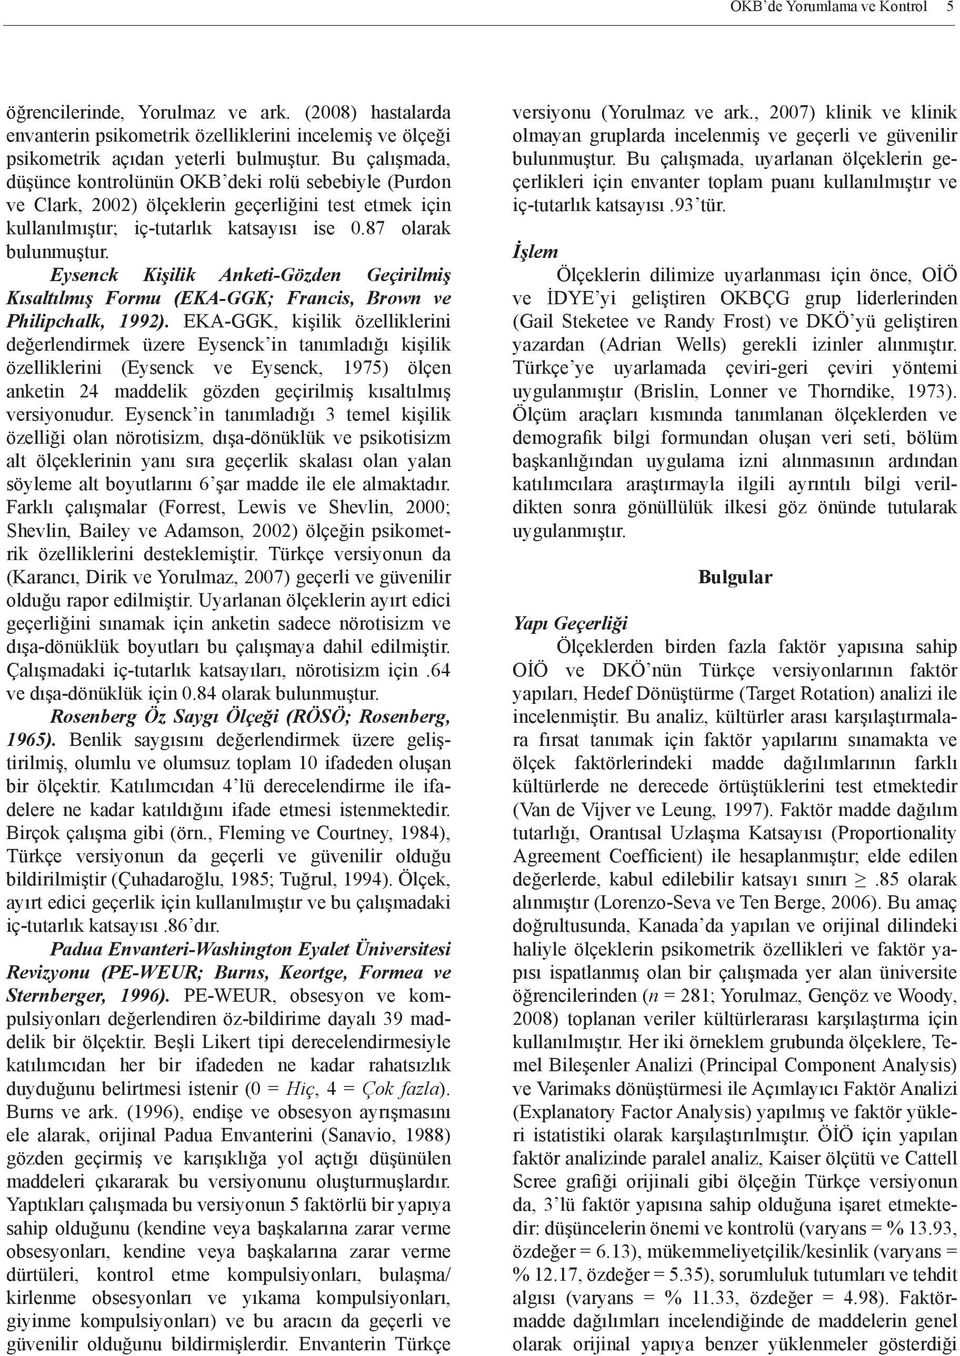 Eysenck Kişilik Anketi-Gözden Geçirilmiş Kısaltılmış Formu (EKA-GGK; Francis, Brown ve Philipchalk, 1992).